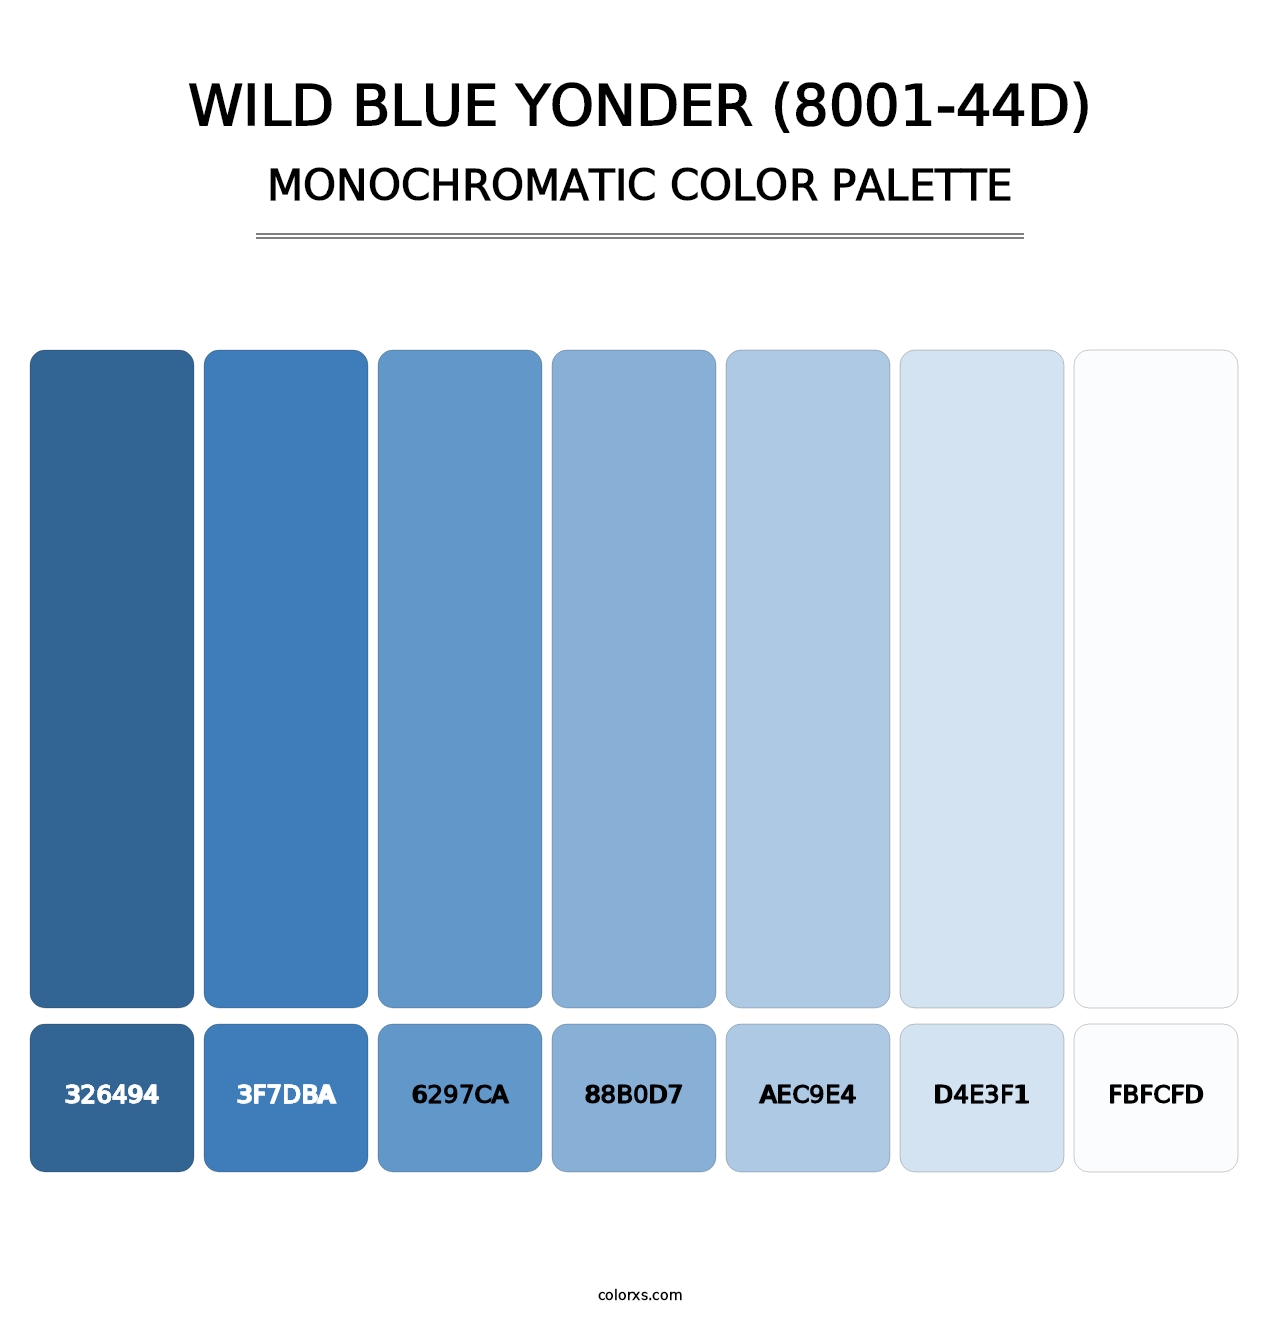 Wild Blue Yonder (8001-44D) - Monochromatic Color Palette